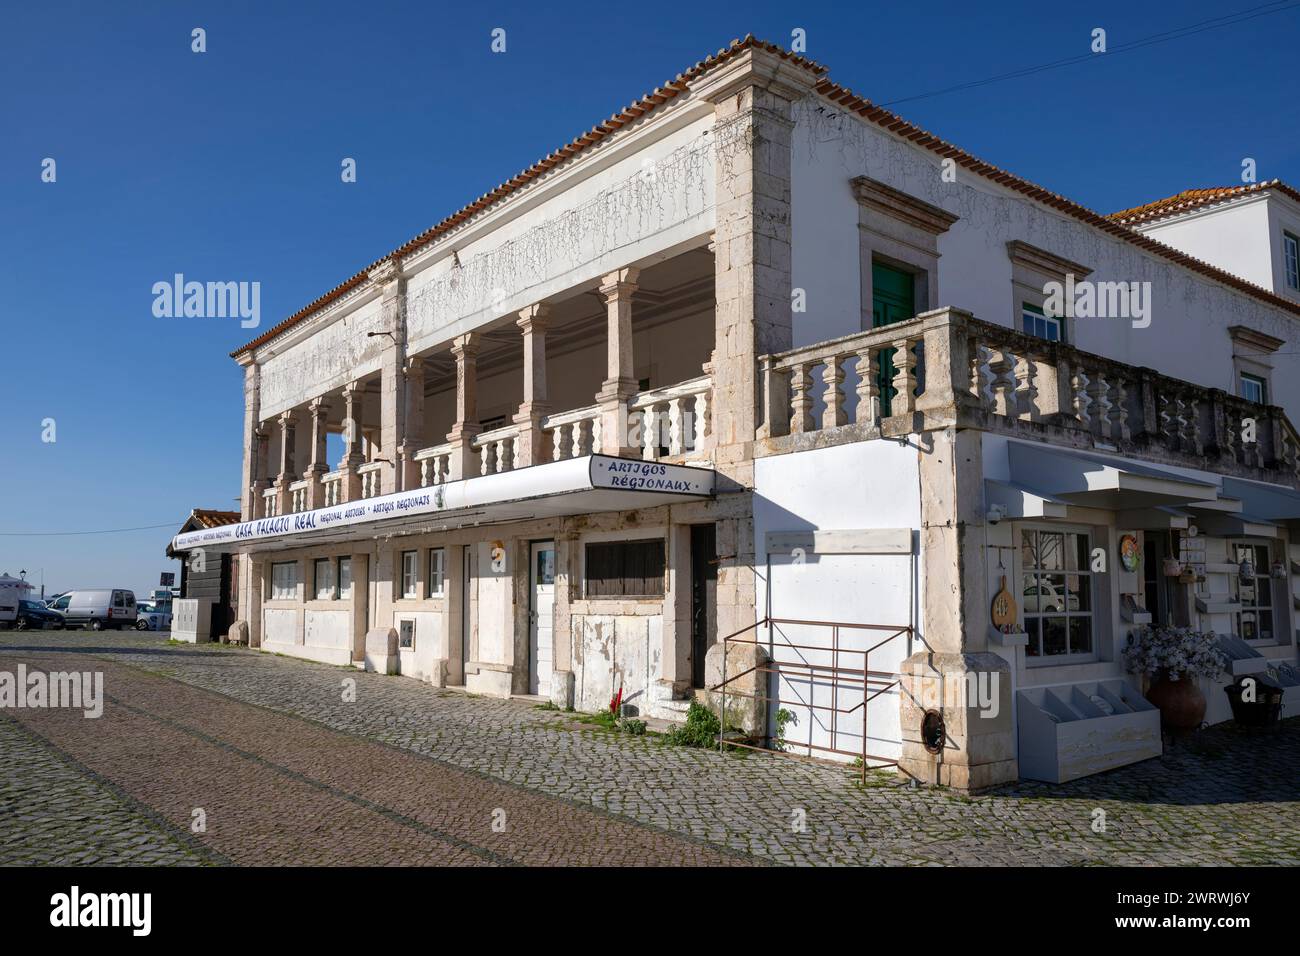 Portugal, Region Oeste, Nazaré, stillgelegte Ladeneinheiten auf Largo de Nossa Sra. Da Nazaré im Gebiet von Sítio (nach COVID-19-Pandemie geschlossen) Stockfoto